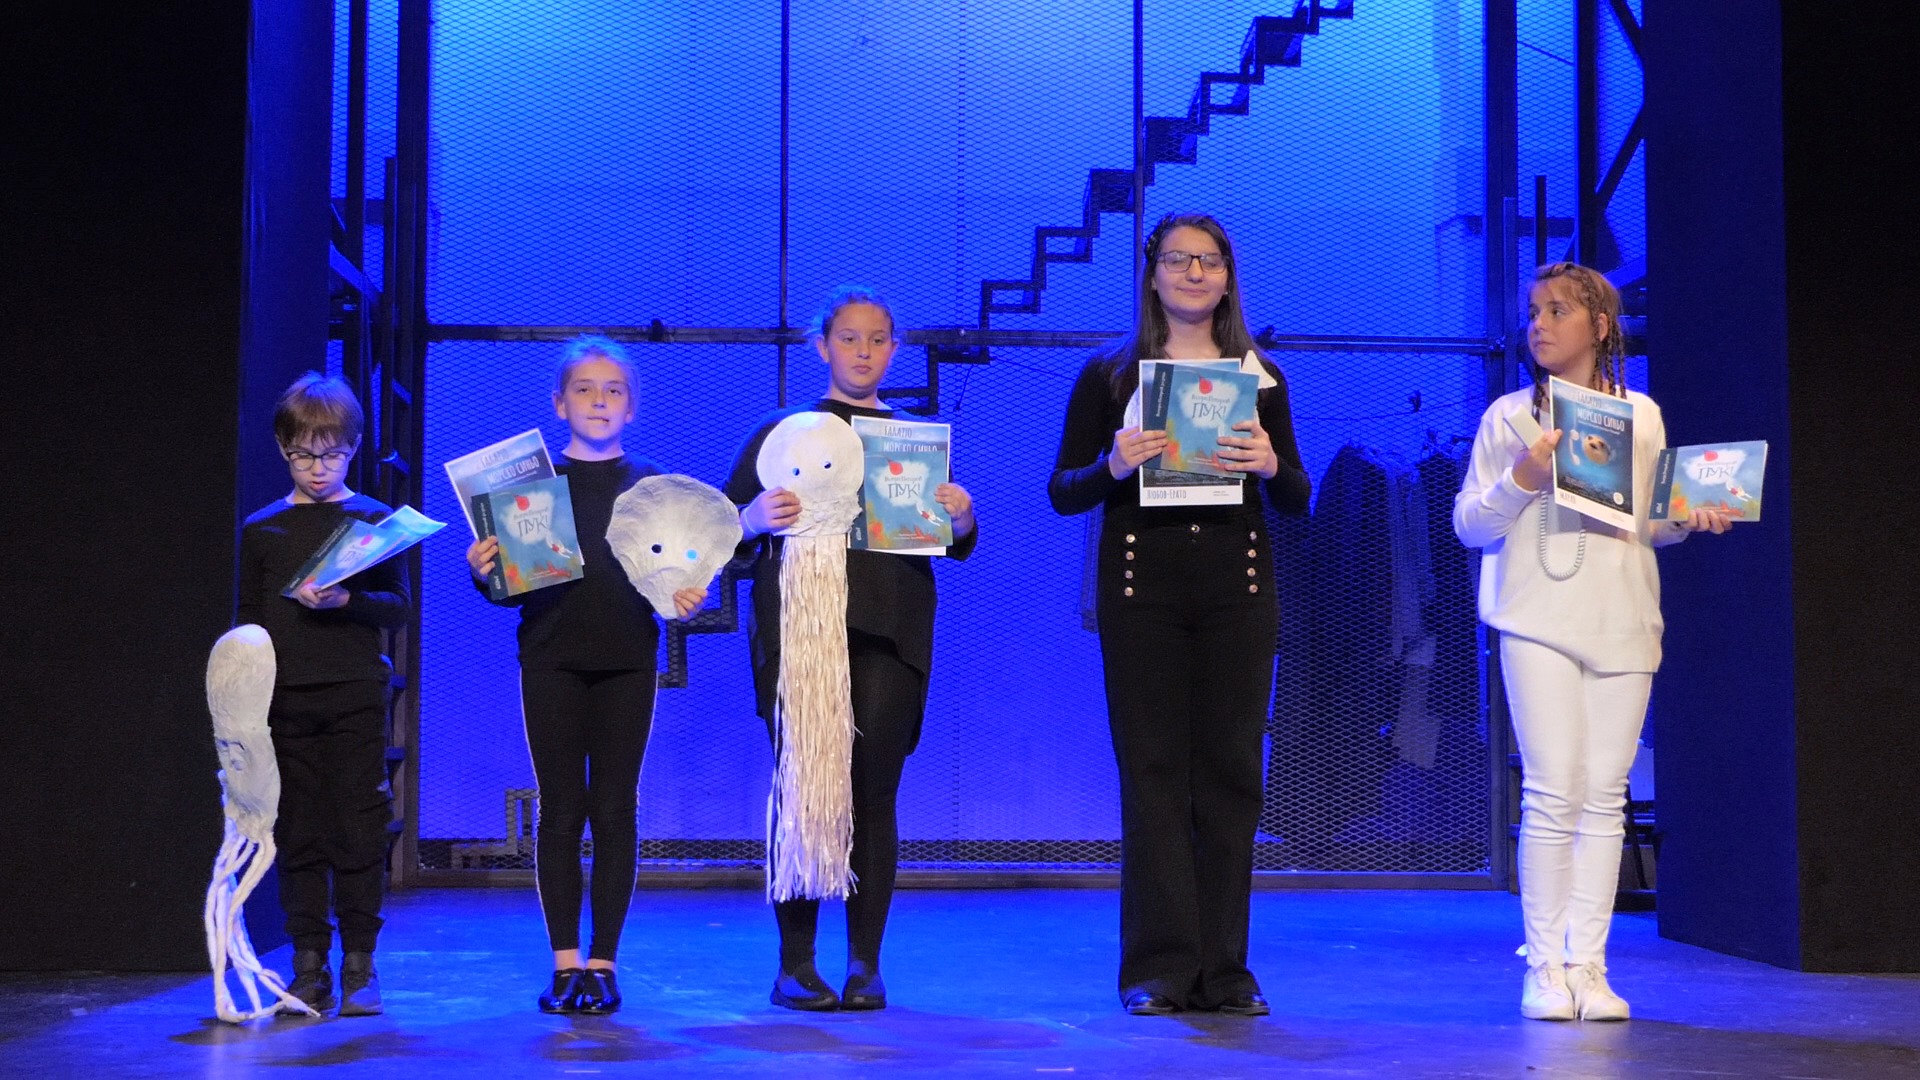 Училище „Паисий Хилендарски“ организира празничен спектакъл по повод Световния ден на книгата  